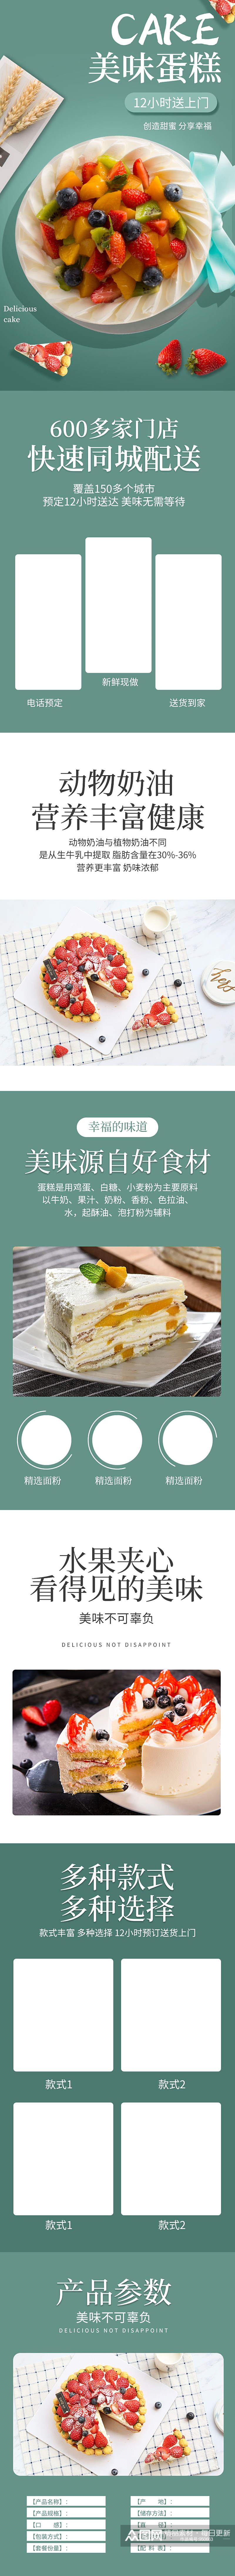 生日蛋糕预订定做节日庆祝甜品详情素材